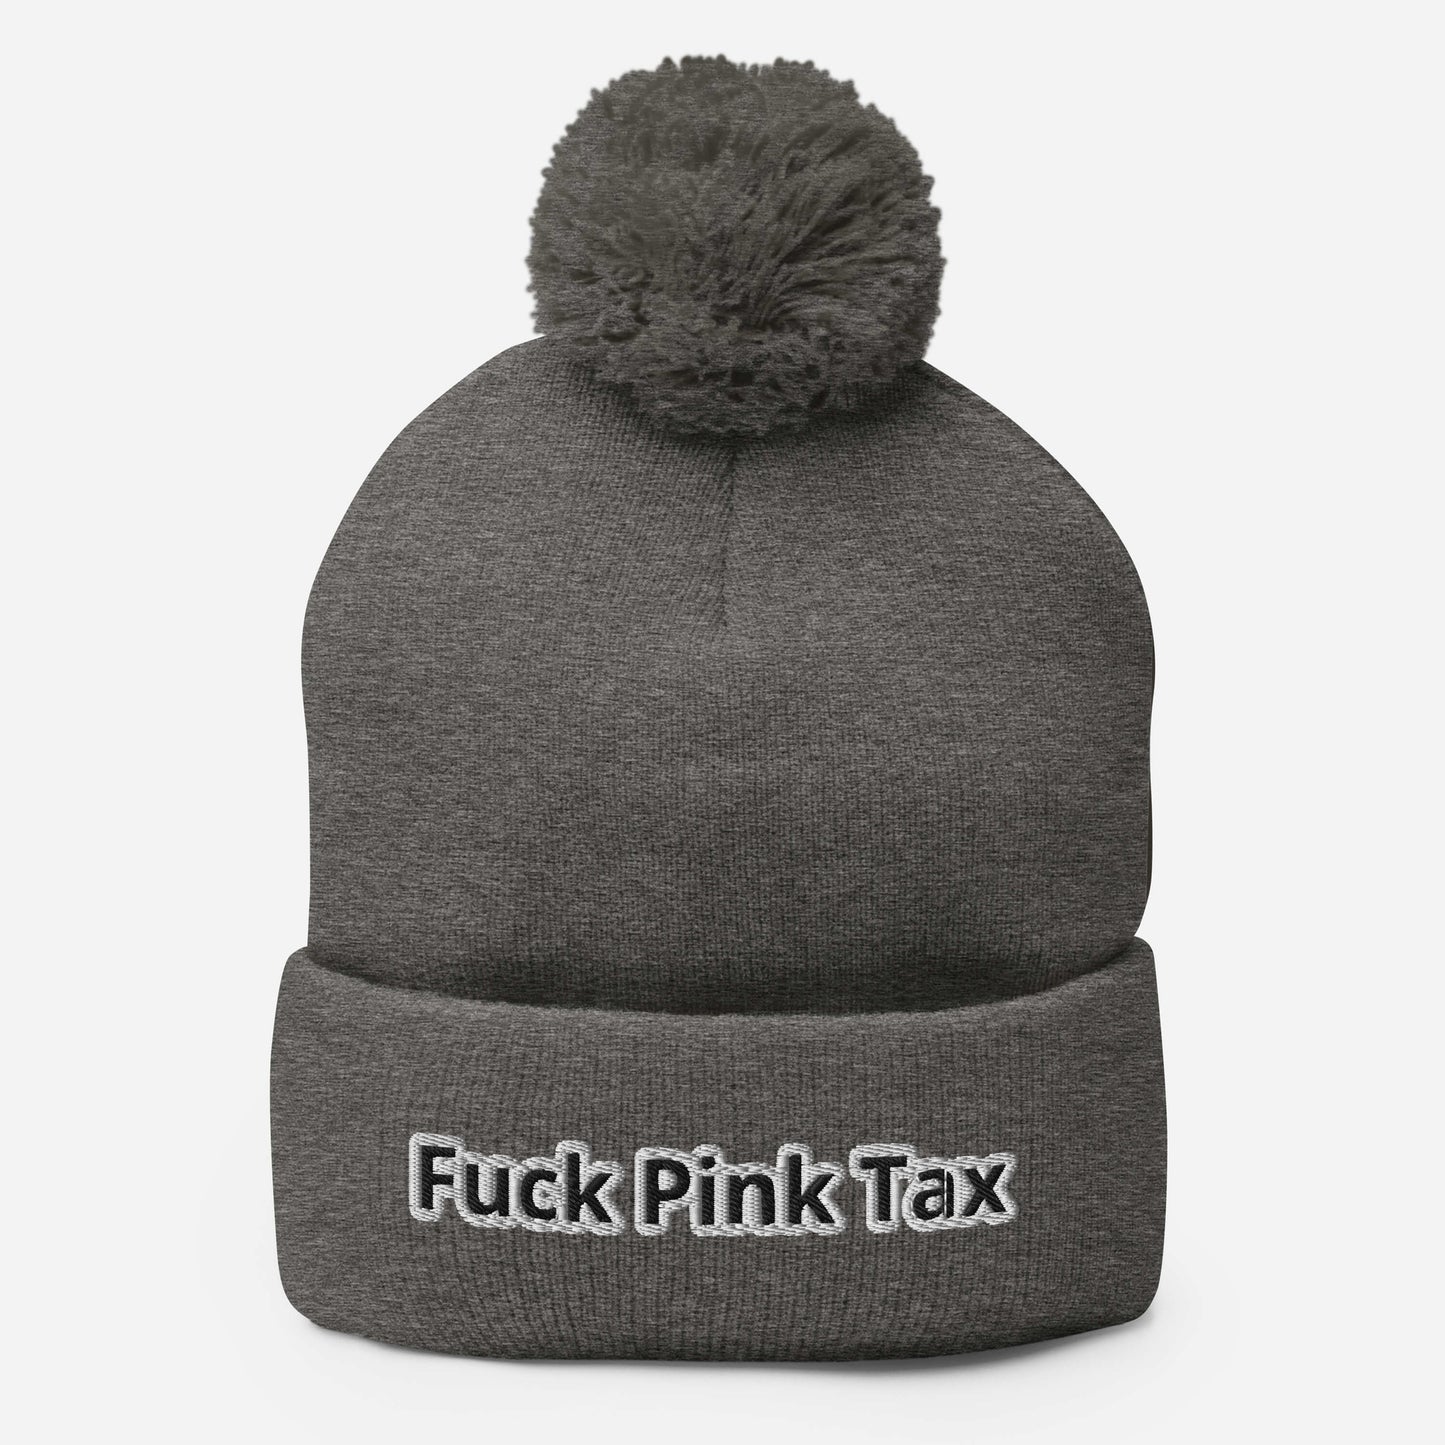 Fuck Pink Tax Pom-pom Beanie